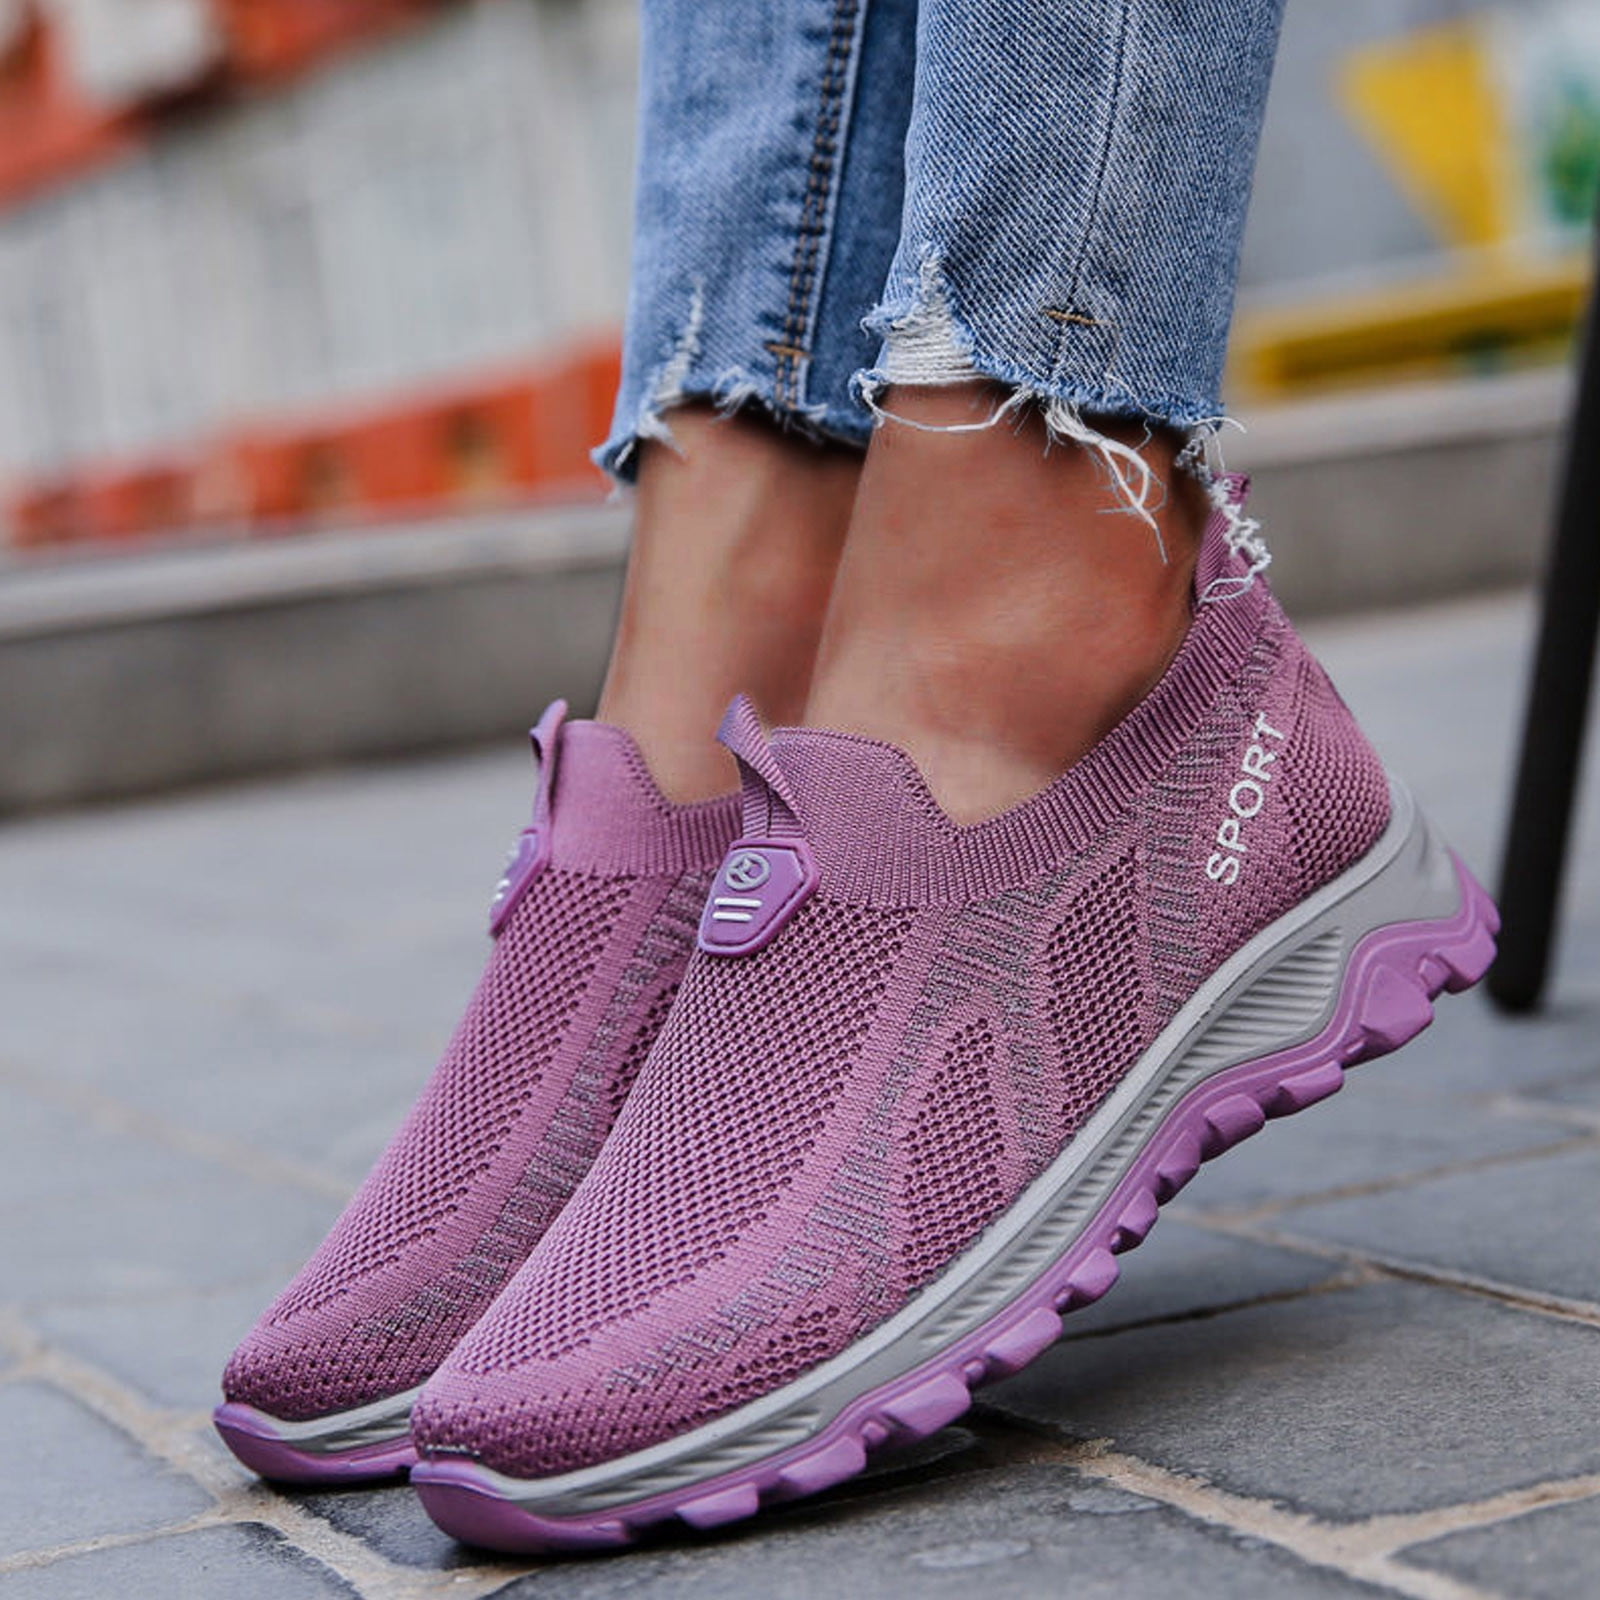 Purple Shoes.